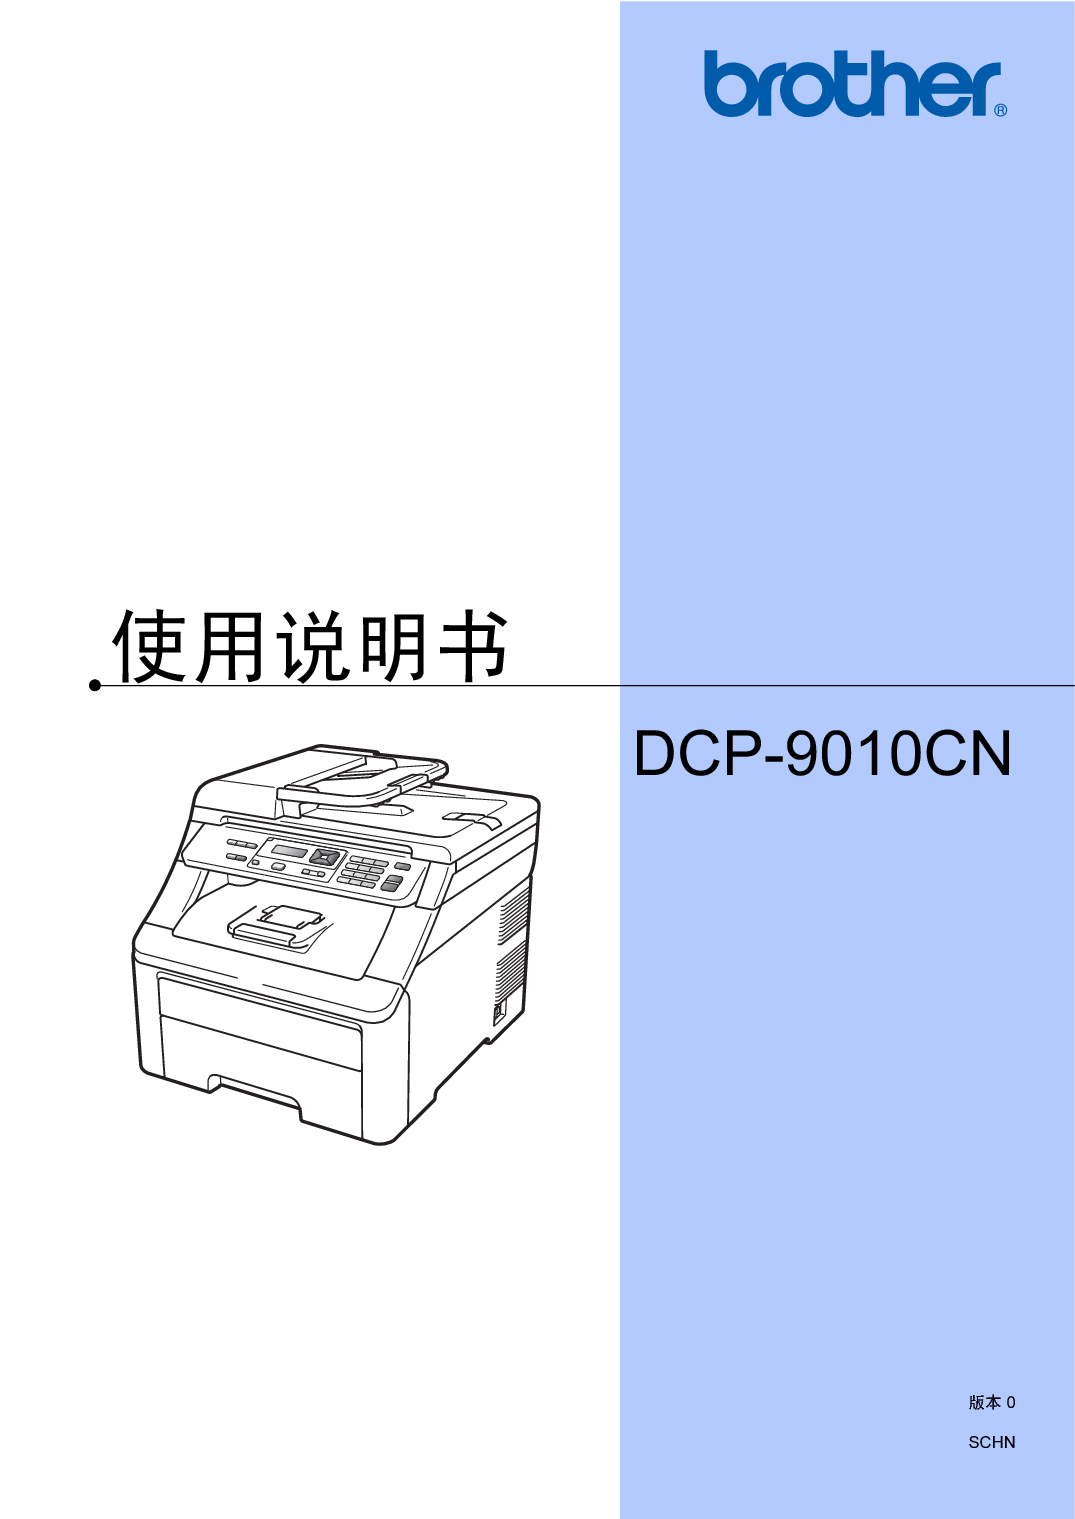 兄弟 Brother DCP-9010CN 使用说明书 封面